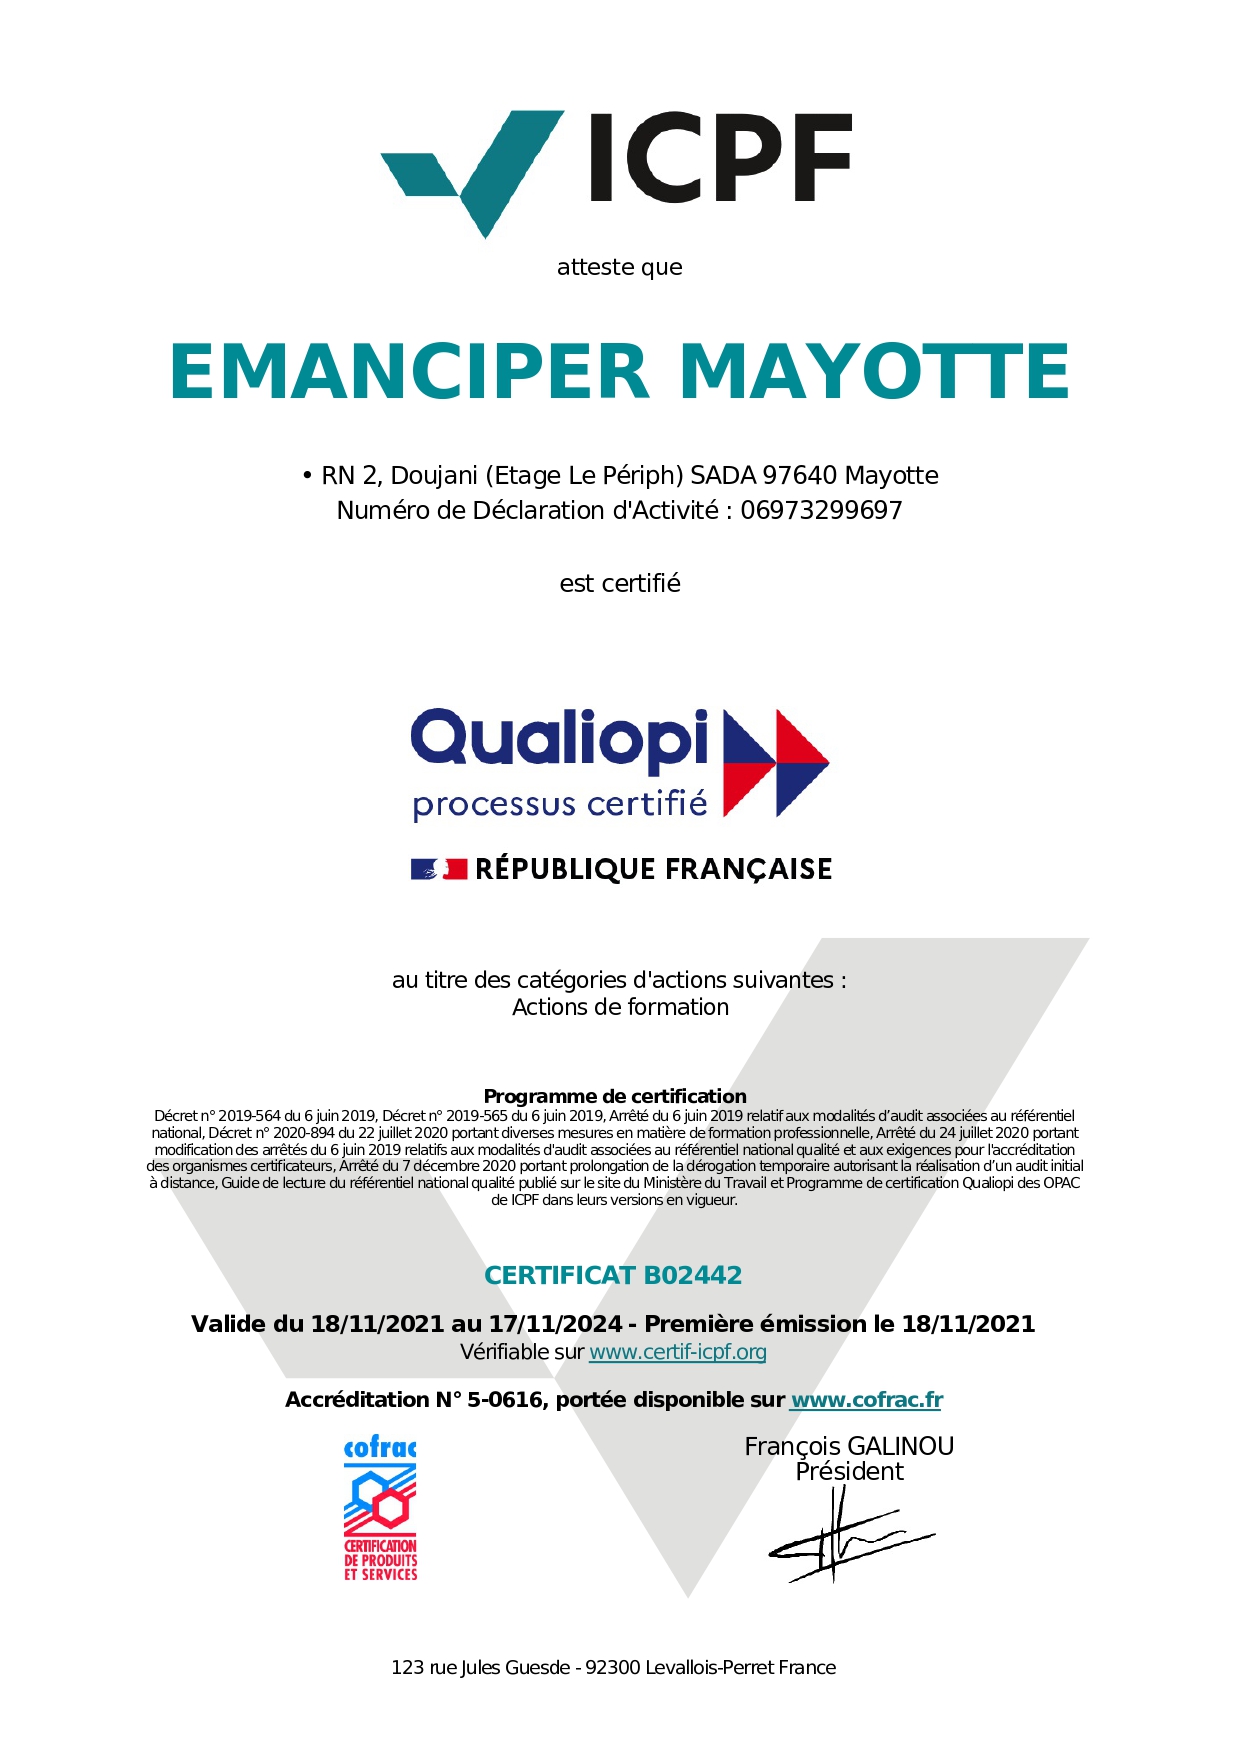 Emanciper Mayotte certifiée "QUALIOPI"